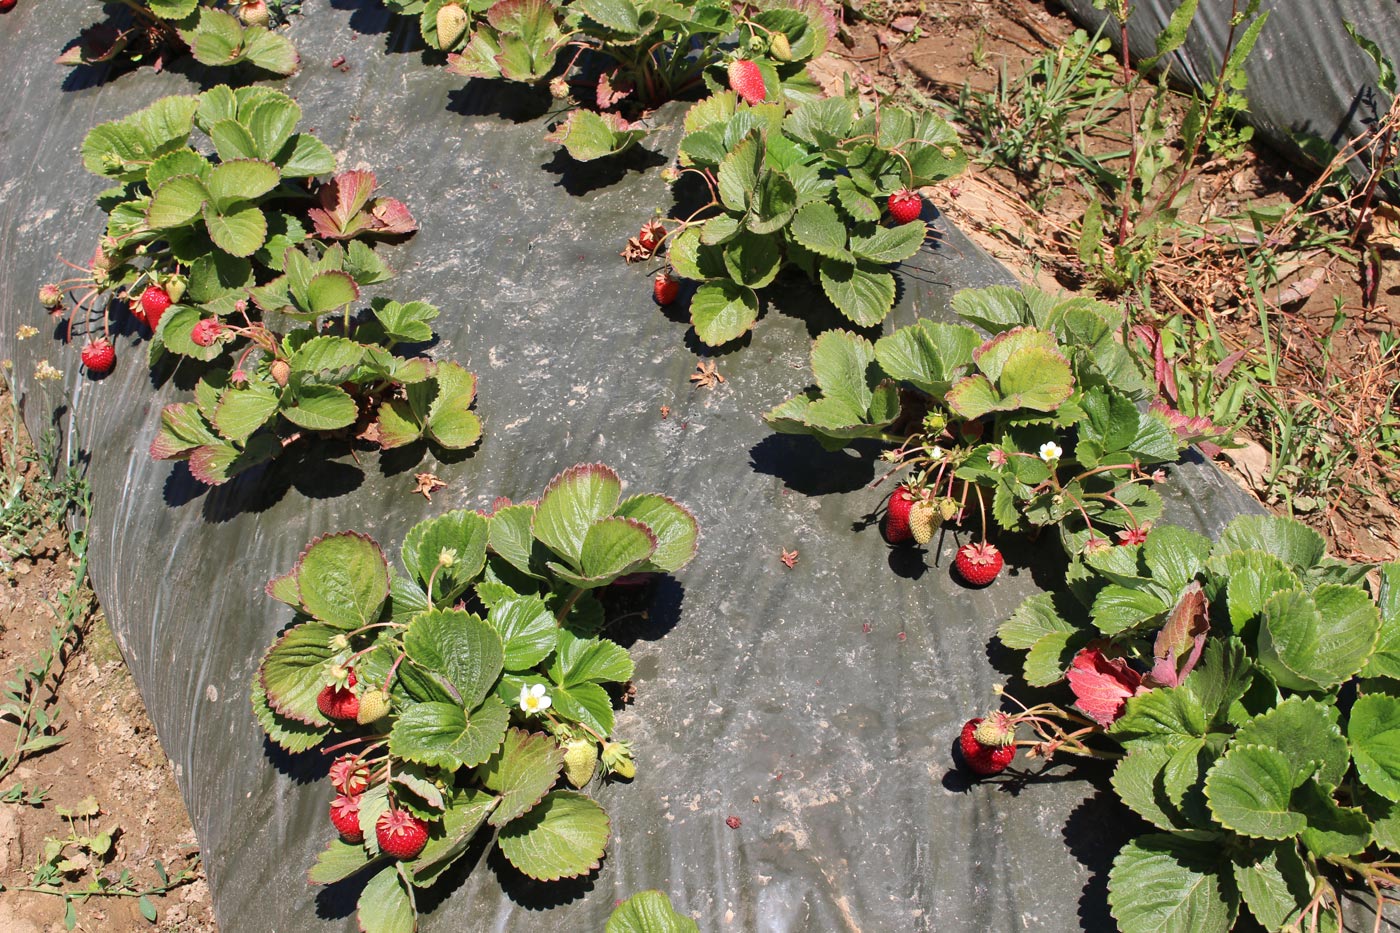 strawberry plants in field.jpg